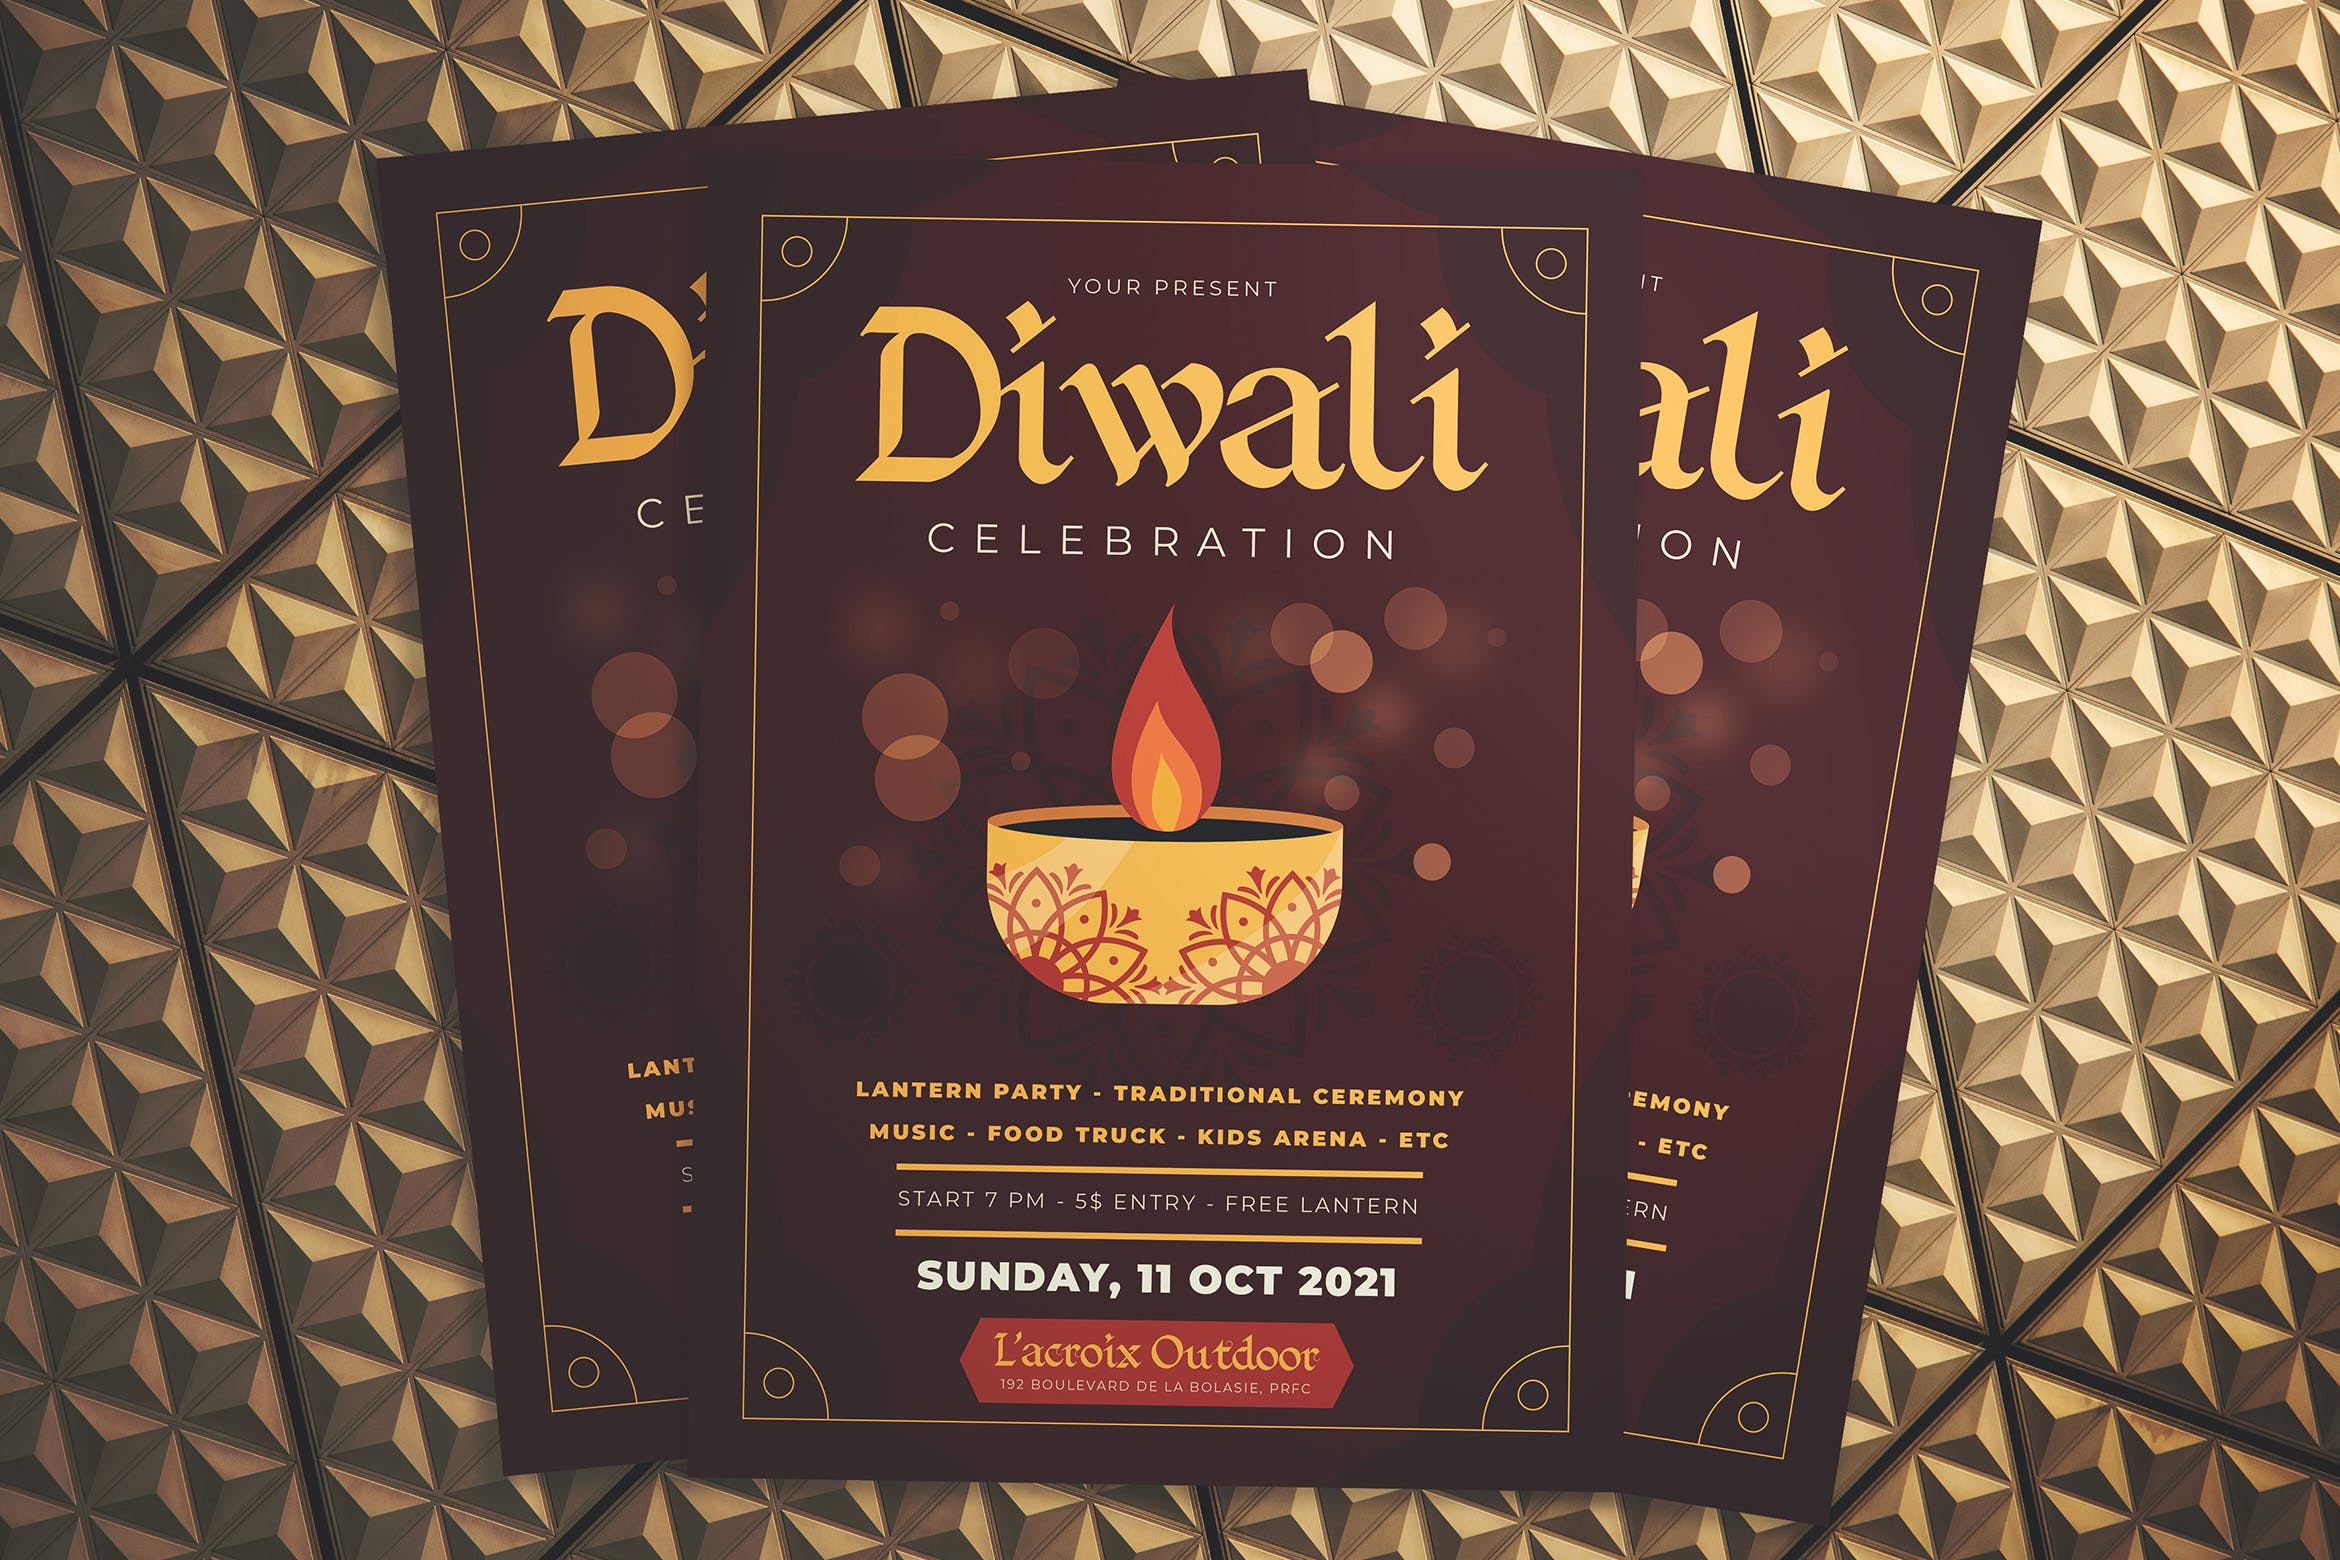 印度传统节日排灯节庆祝活动海报传单模板 Diwali Celebration Flyer插图